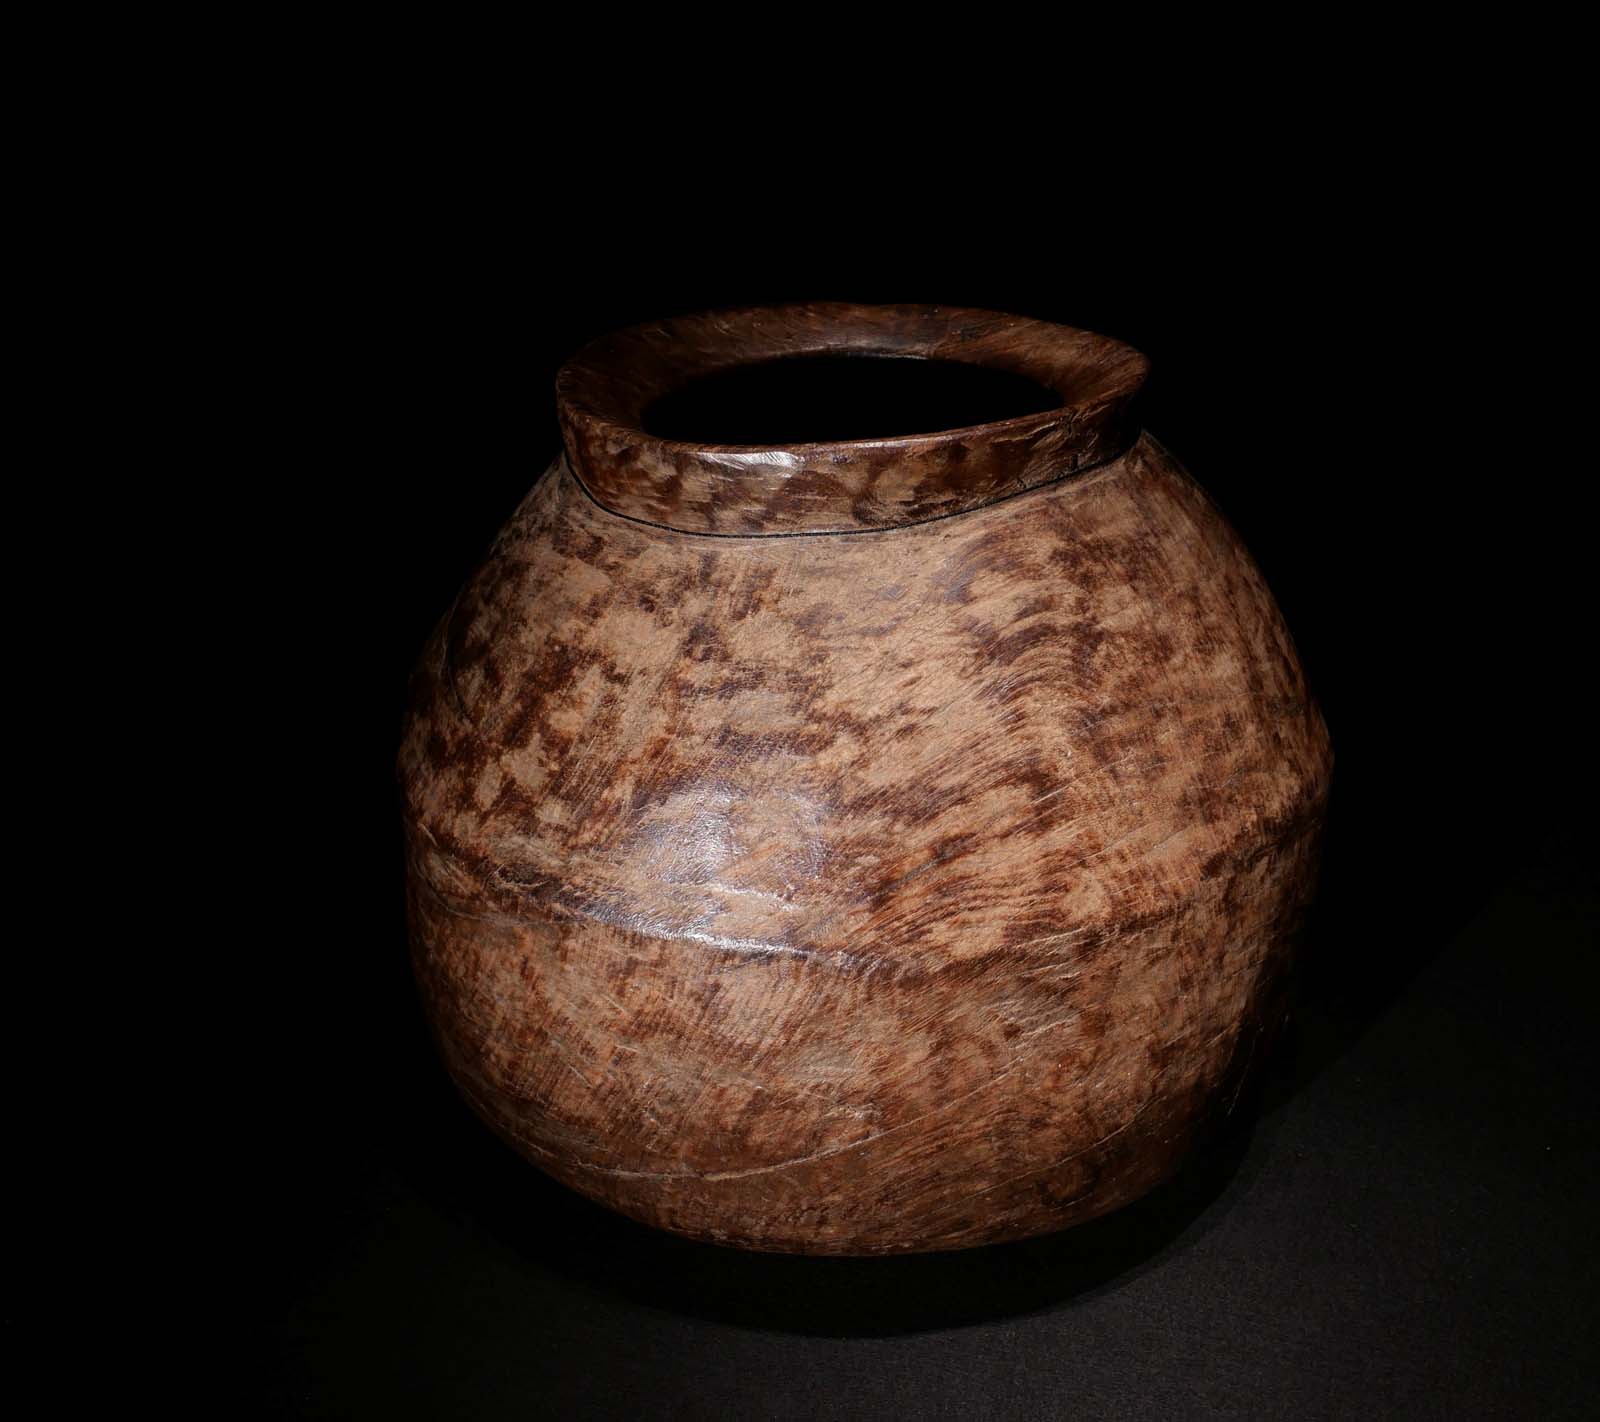 Vorratsgefäss. Holz gehauen. Naga / Nordost-Indien. H 35 cm, D 40 cm. 450.- €